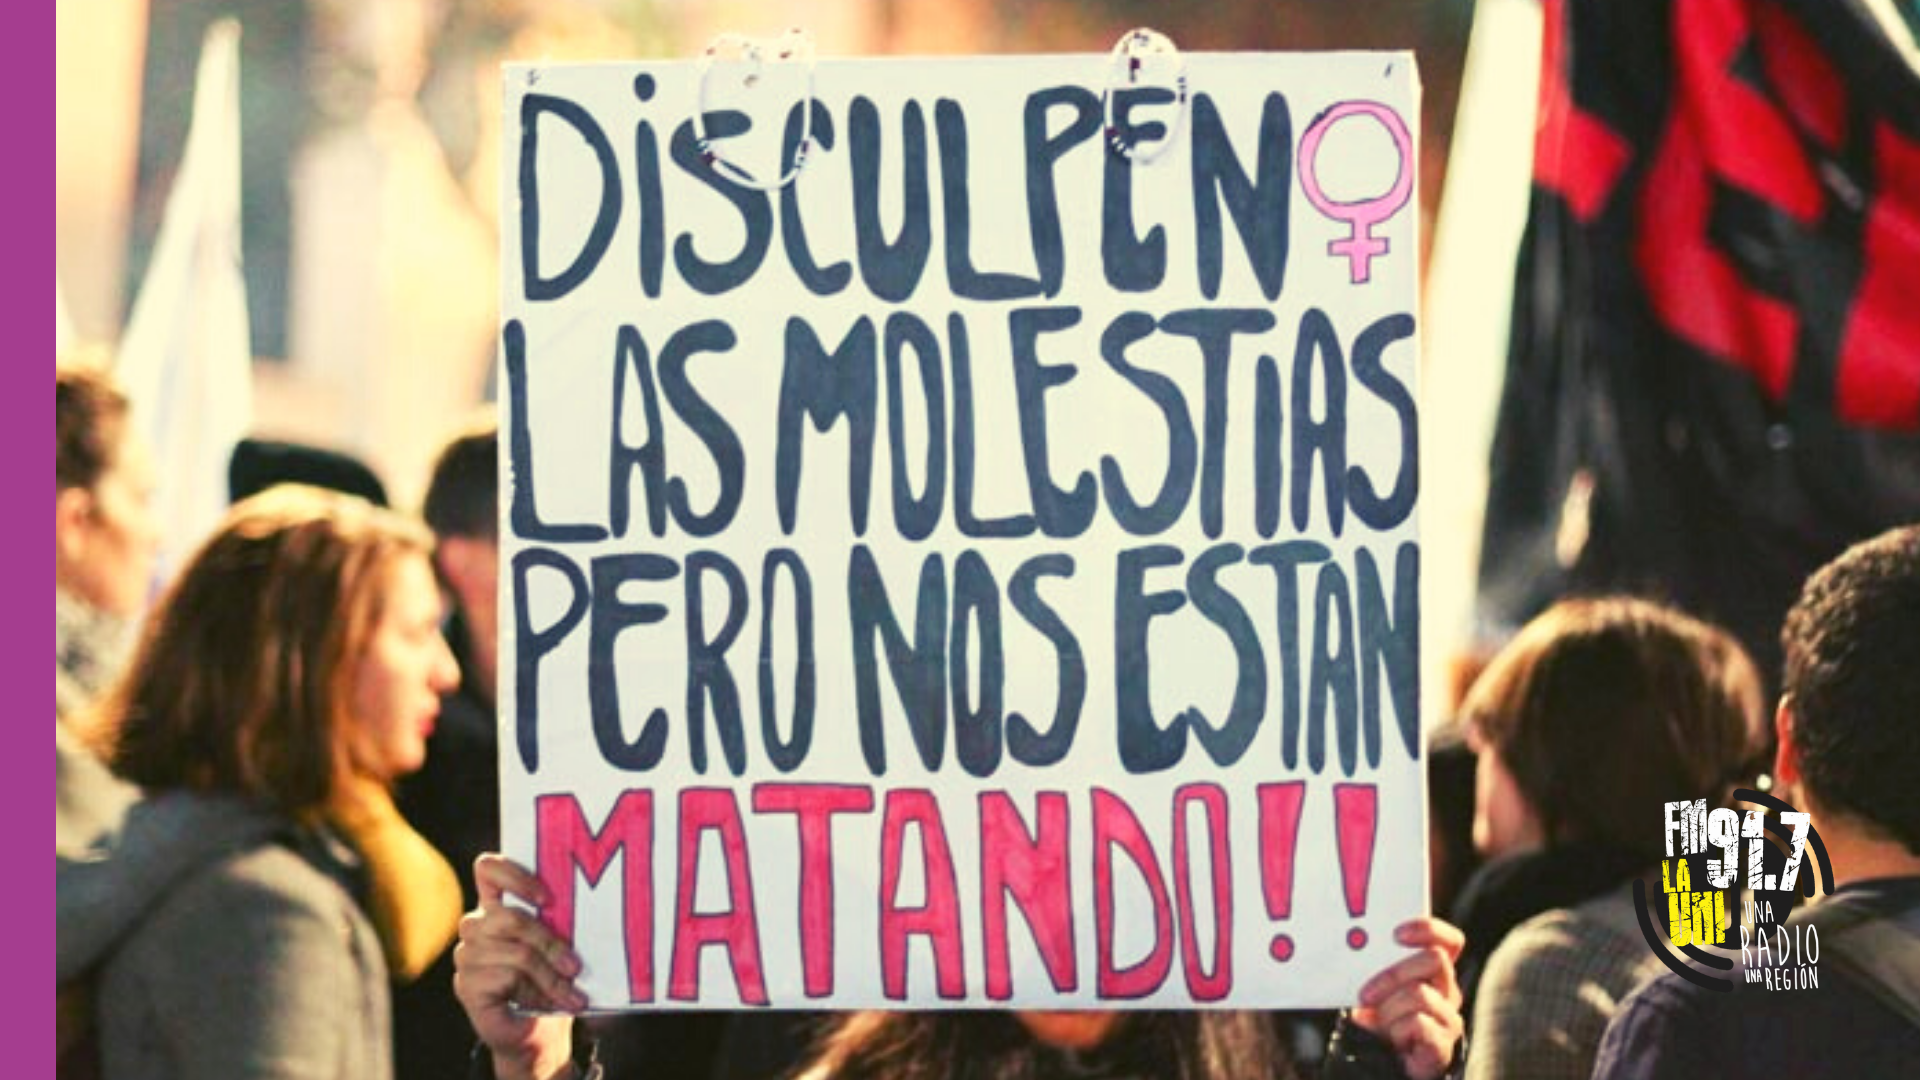 142 femicidios en Argentina y 151 niñeces sin madres